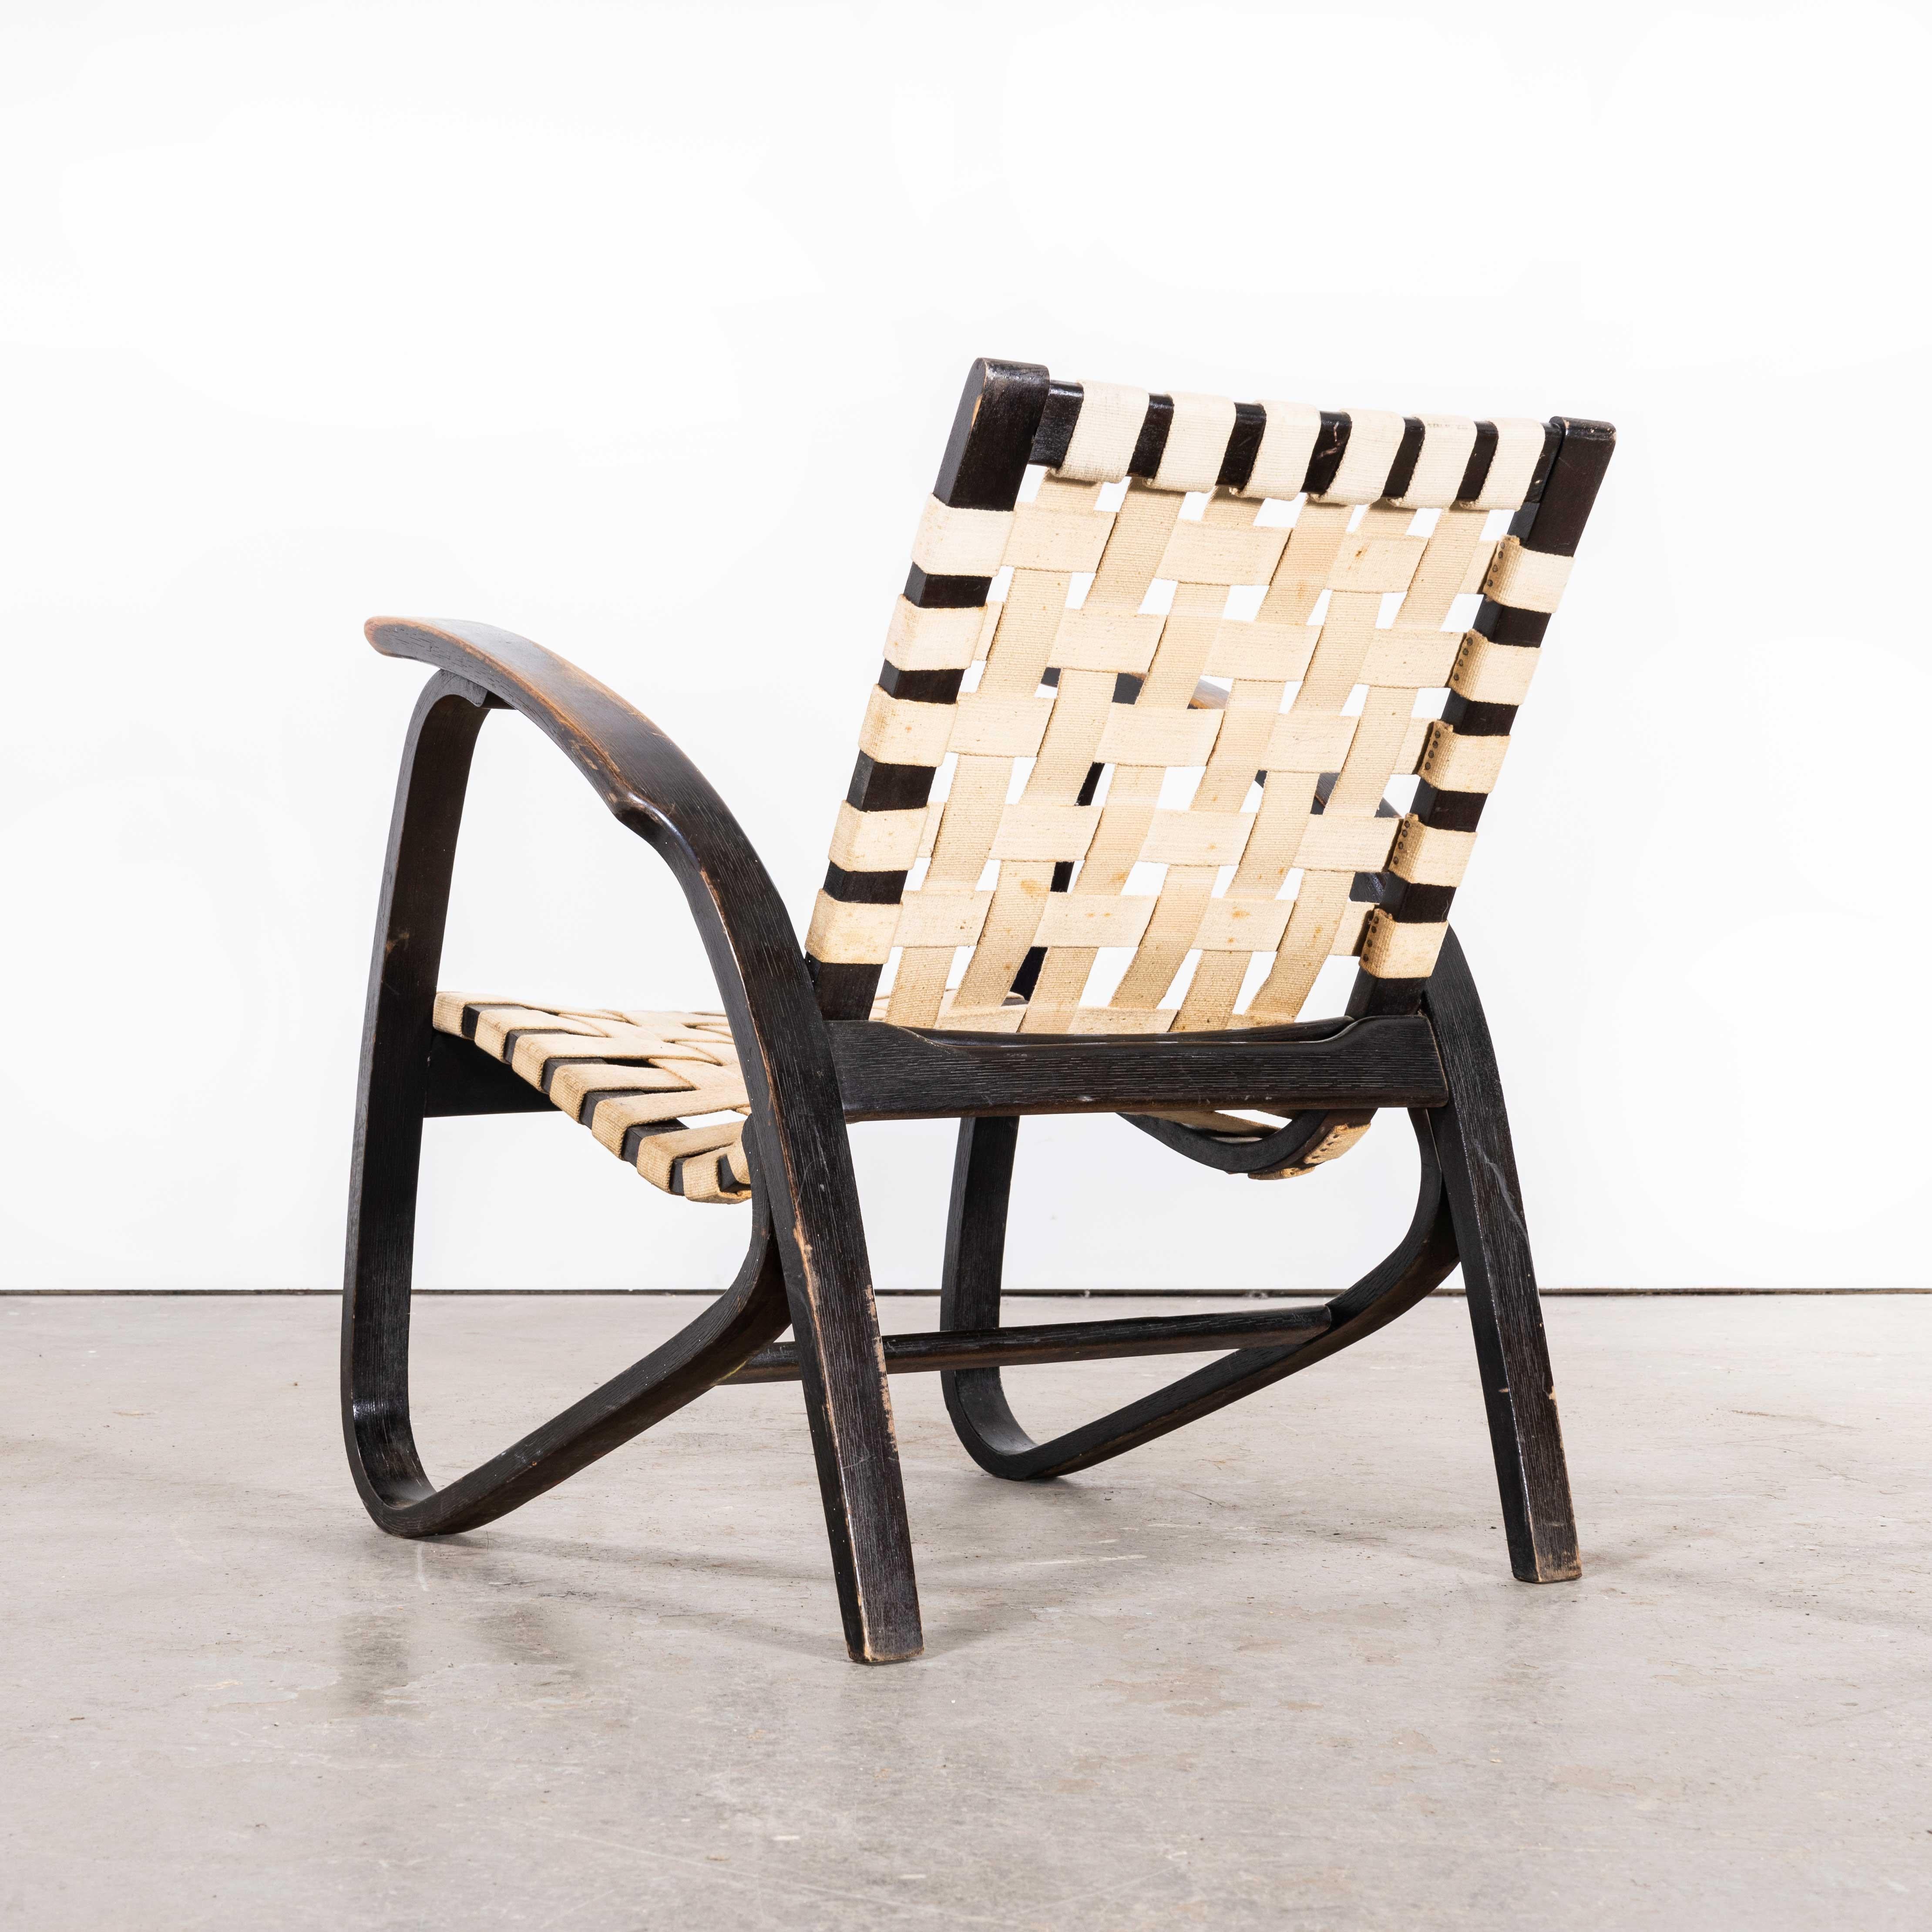 Paire de fauteuils en bois courbé de Jan Vanek, 1930
Paire de fauteuils en bois courbé des années 1930 par Jan Vanek - fabriqués par le producteur tchèque Up Zavody. Jan Vanek était l'un des principaux designers et architectes d'intérieur tchèques